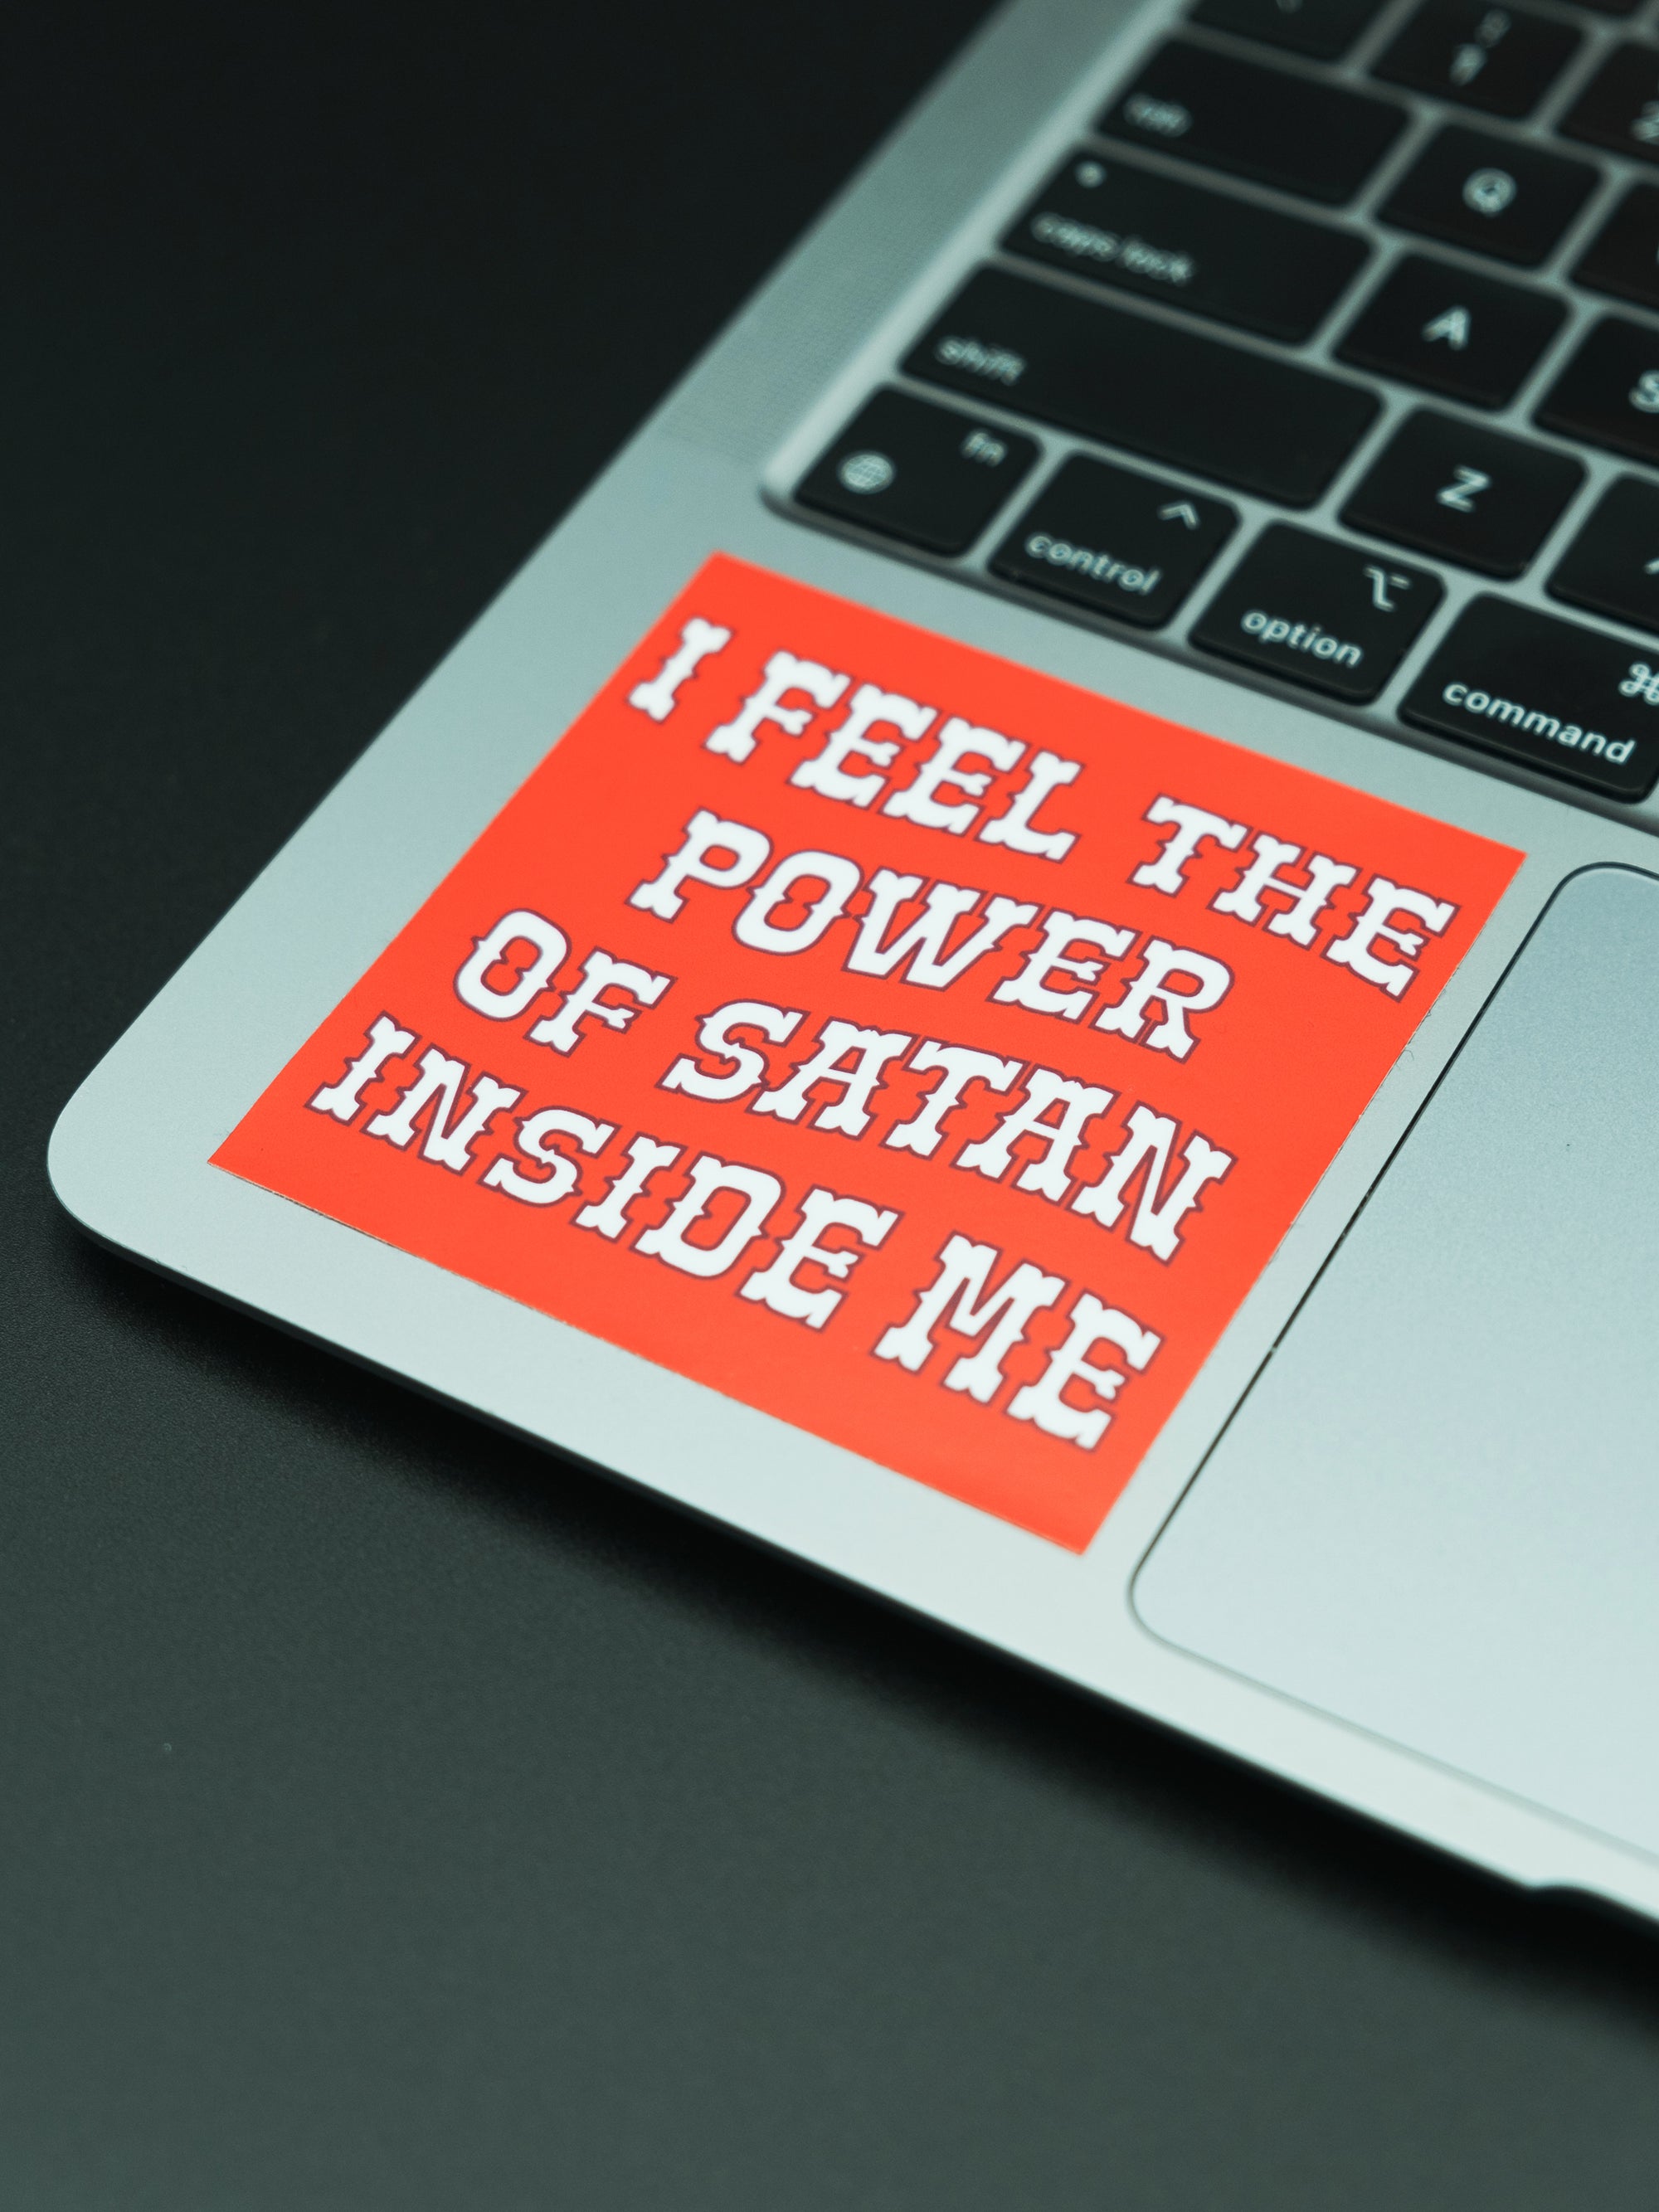 I Feel The Power of Satan Inside Me Sticker